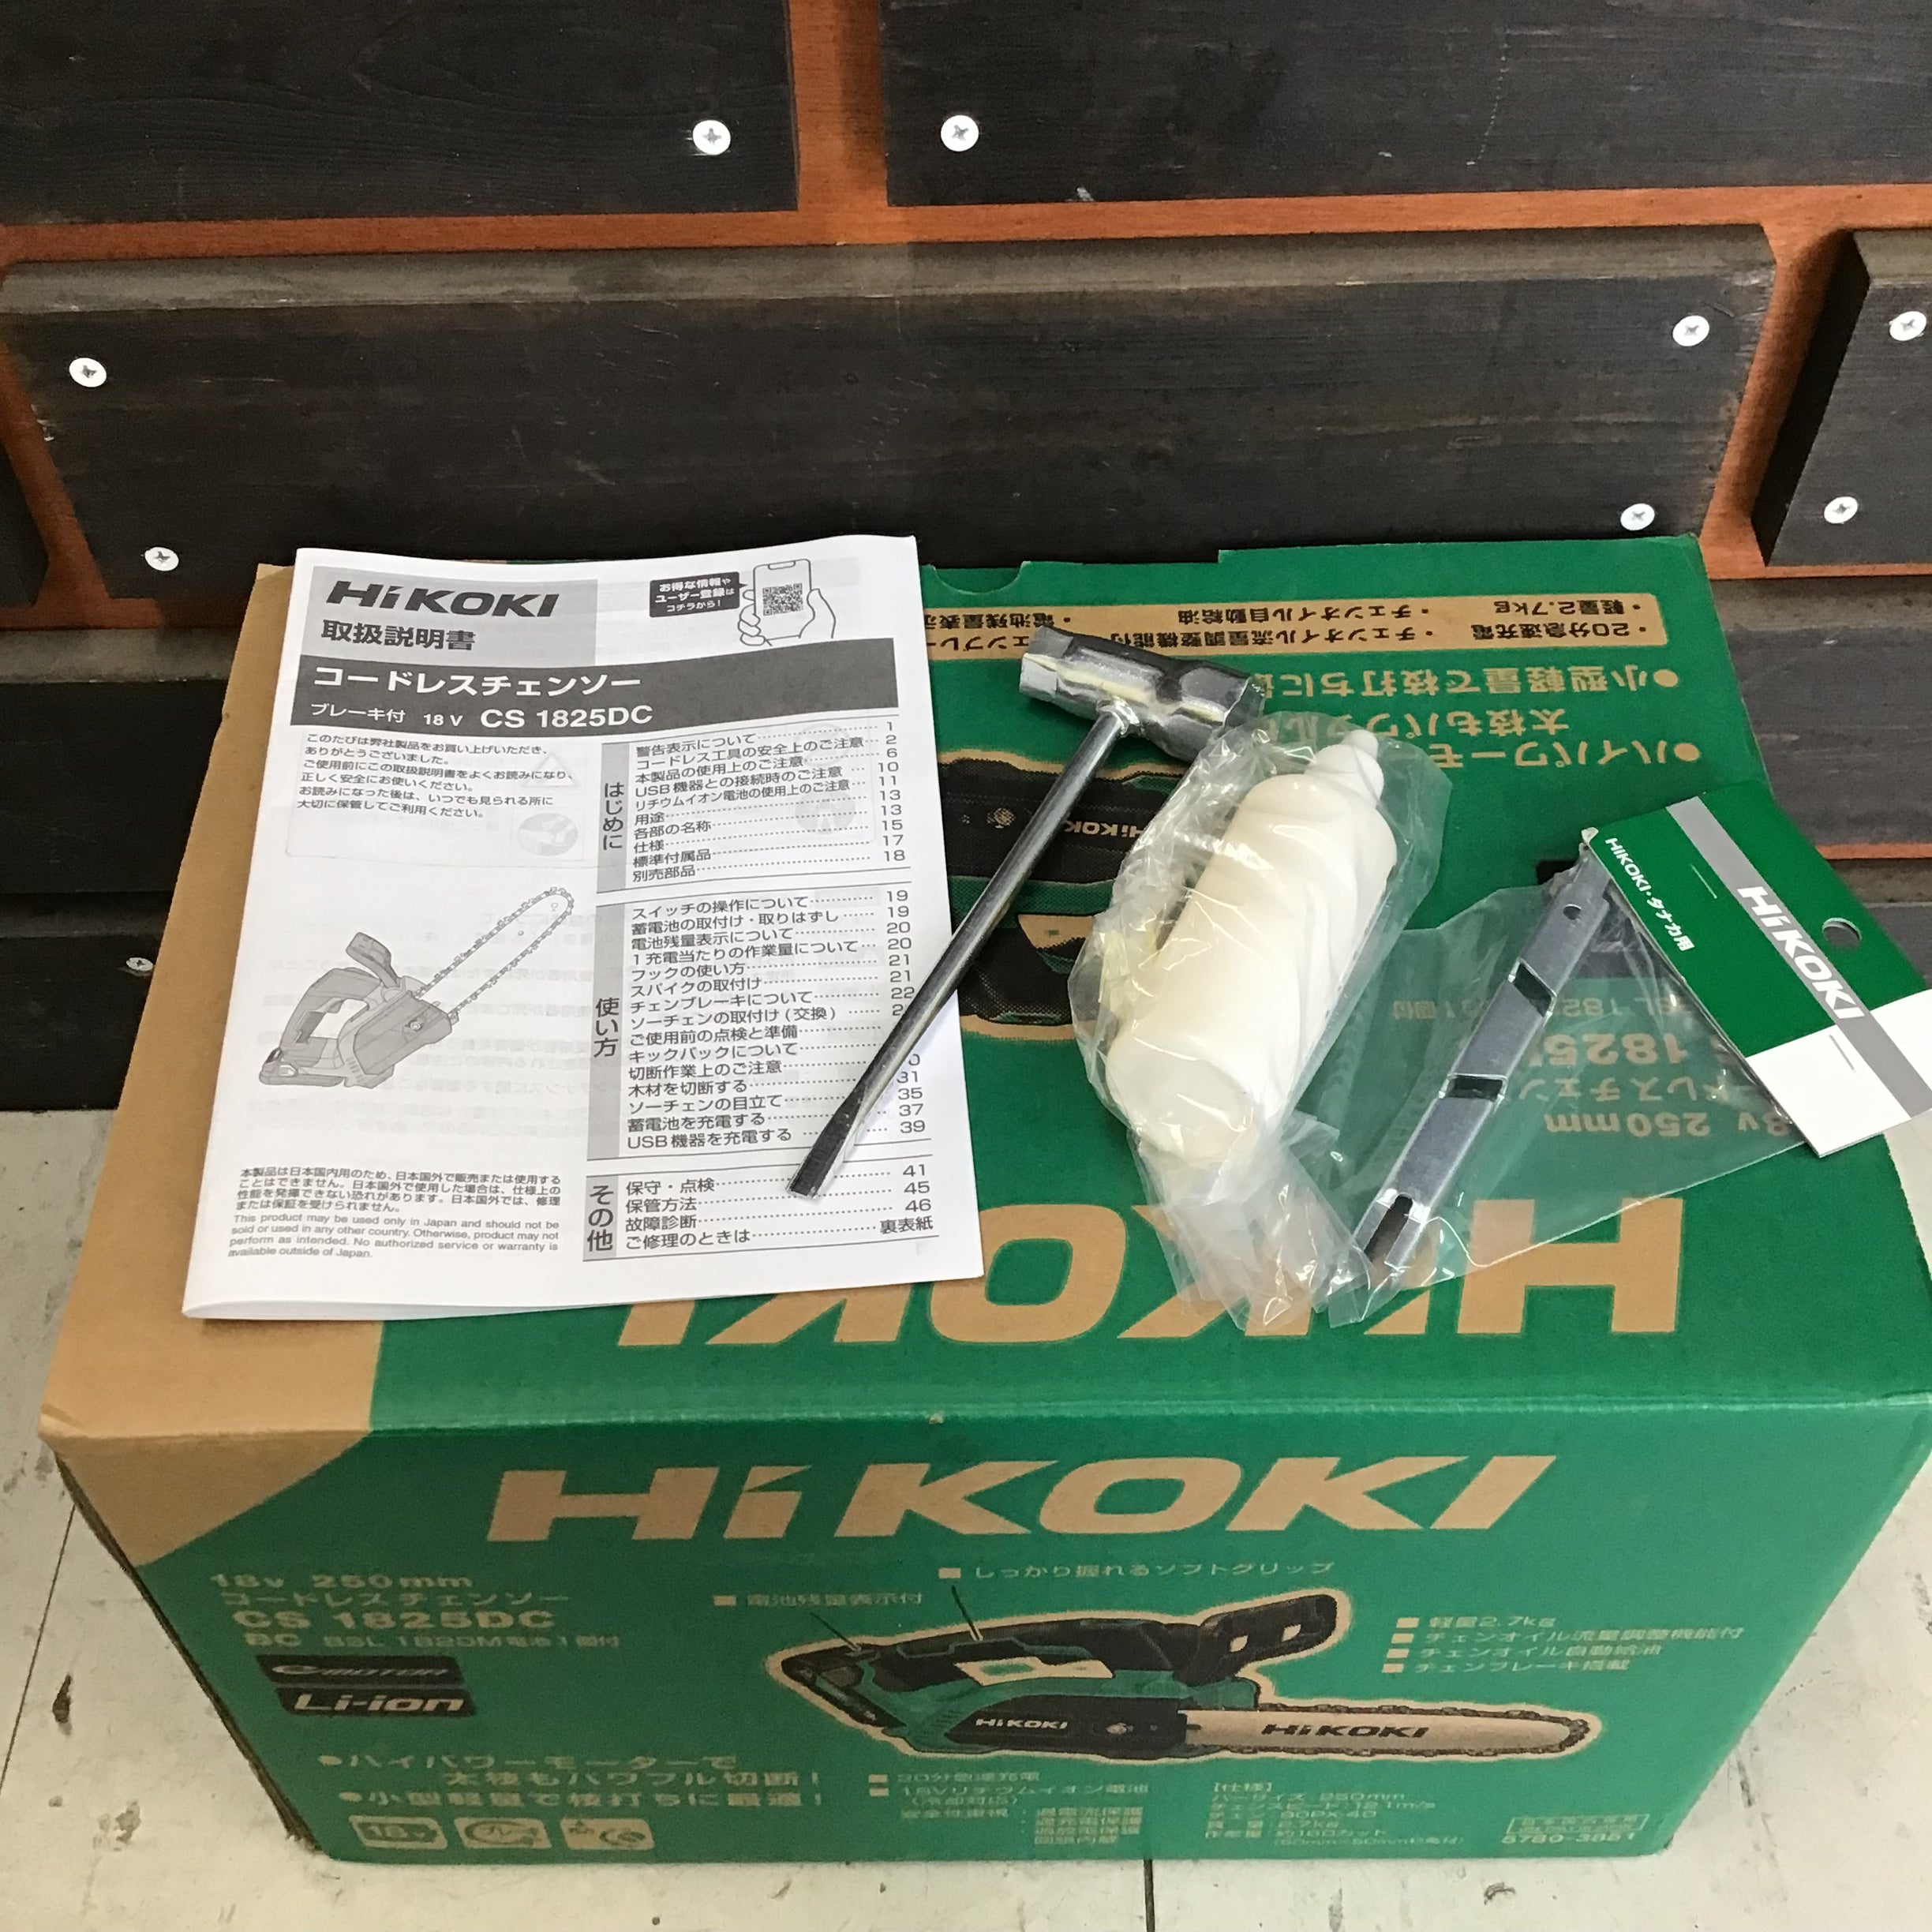 ☆ハイコーキ(HIKOKI ※旧:日立工機) コードレスチェーンソー CS1825DC